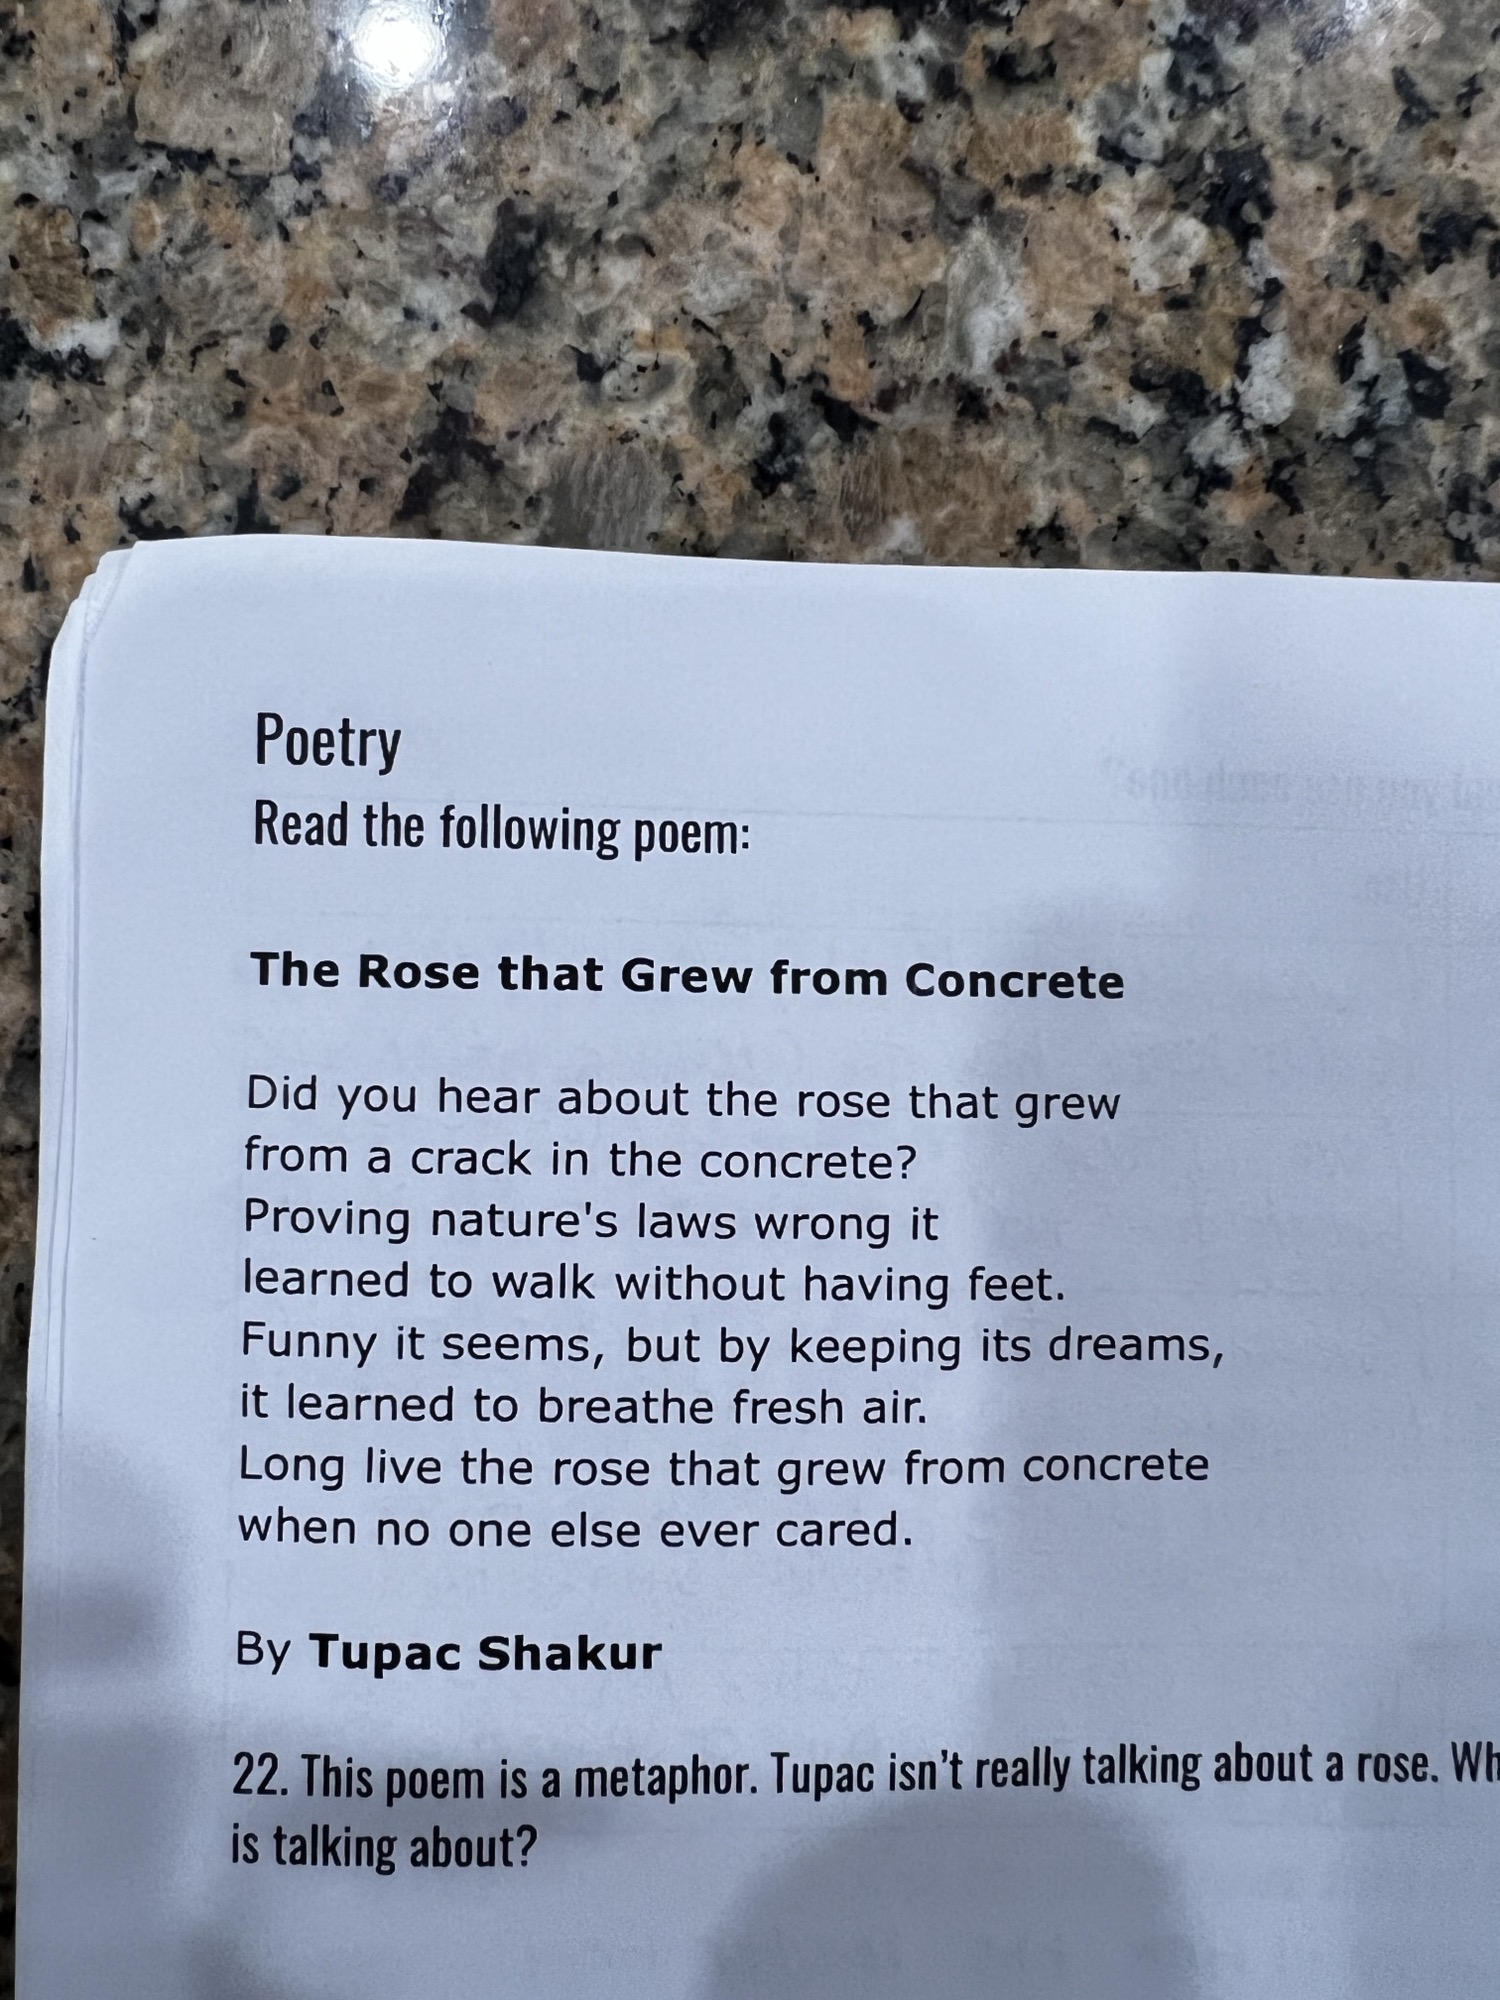 r/mildlyinteresting - My son’s school is teaching metaphor via Tupac’s poetry.